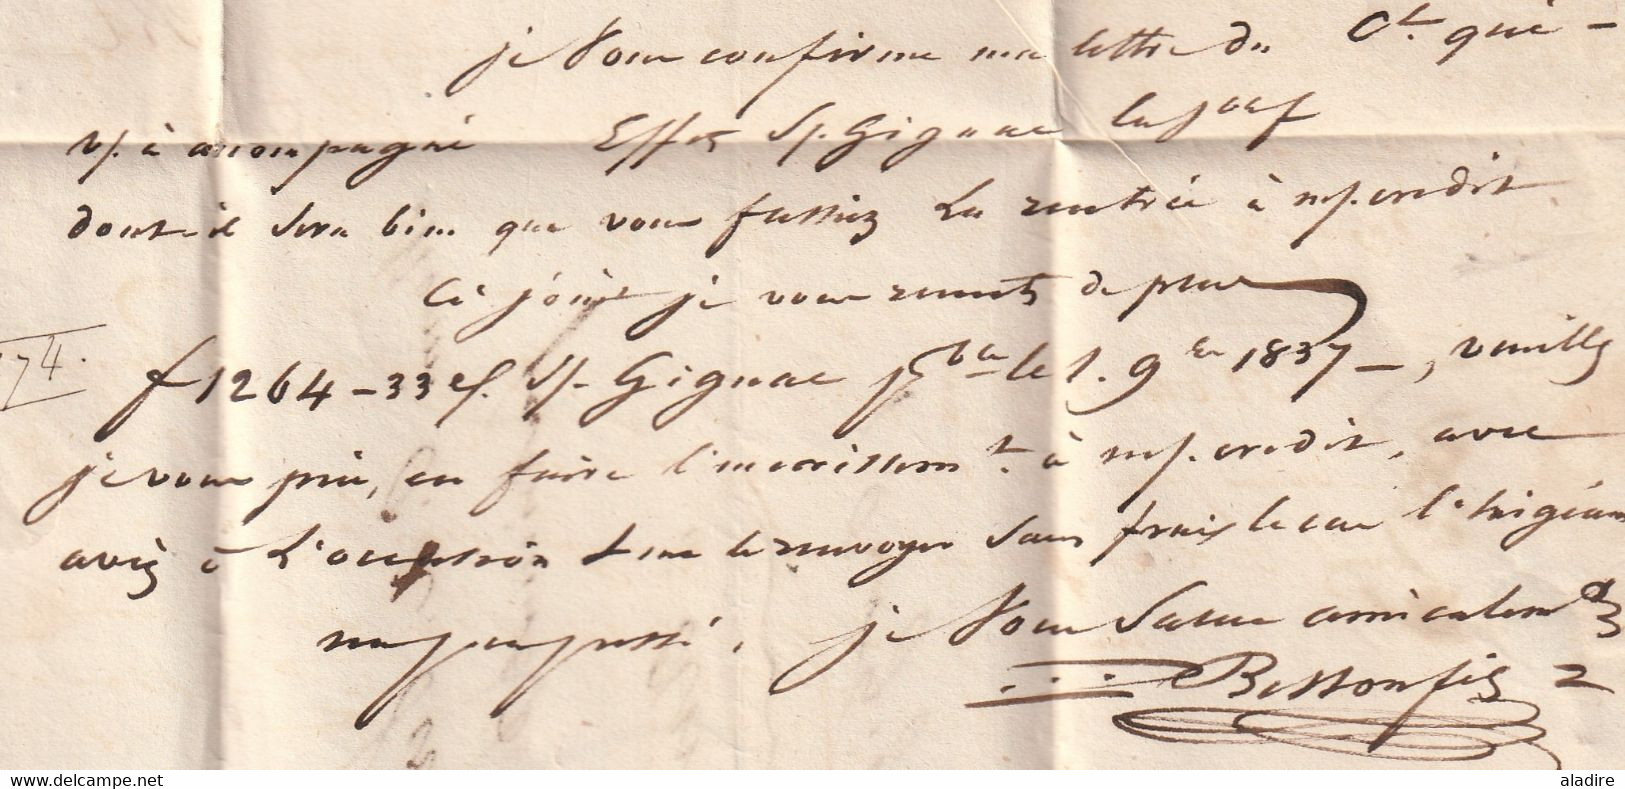 1837 - D4 Grand cachet à date type 12 simple fleuron sur Lettre avec texte de Pézenas, Hérault - Décime rural